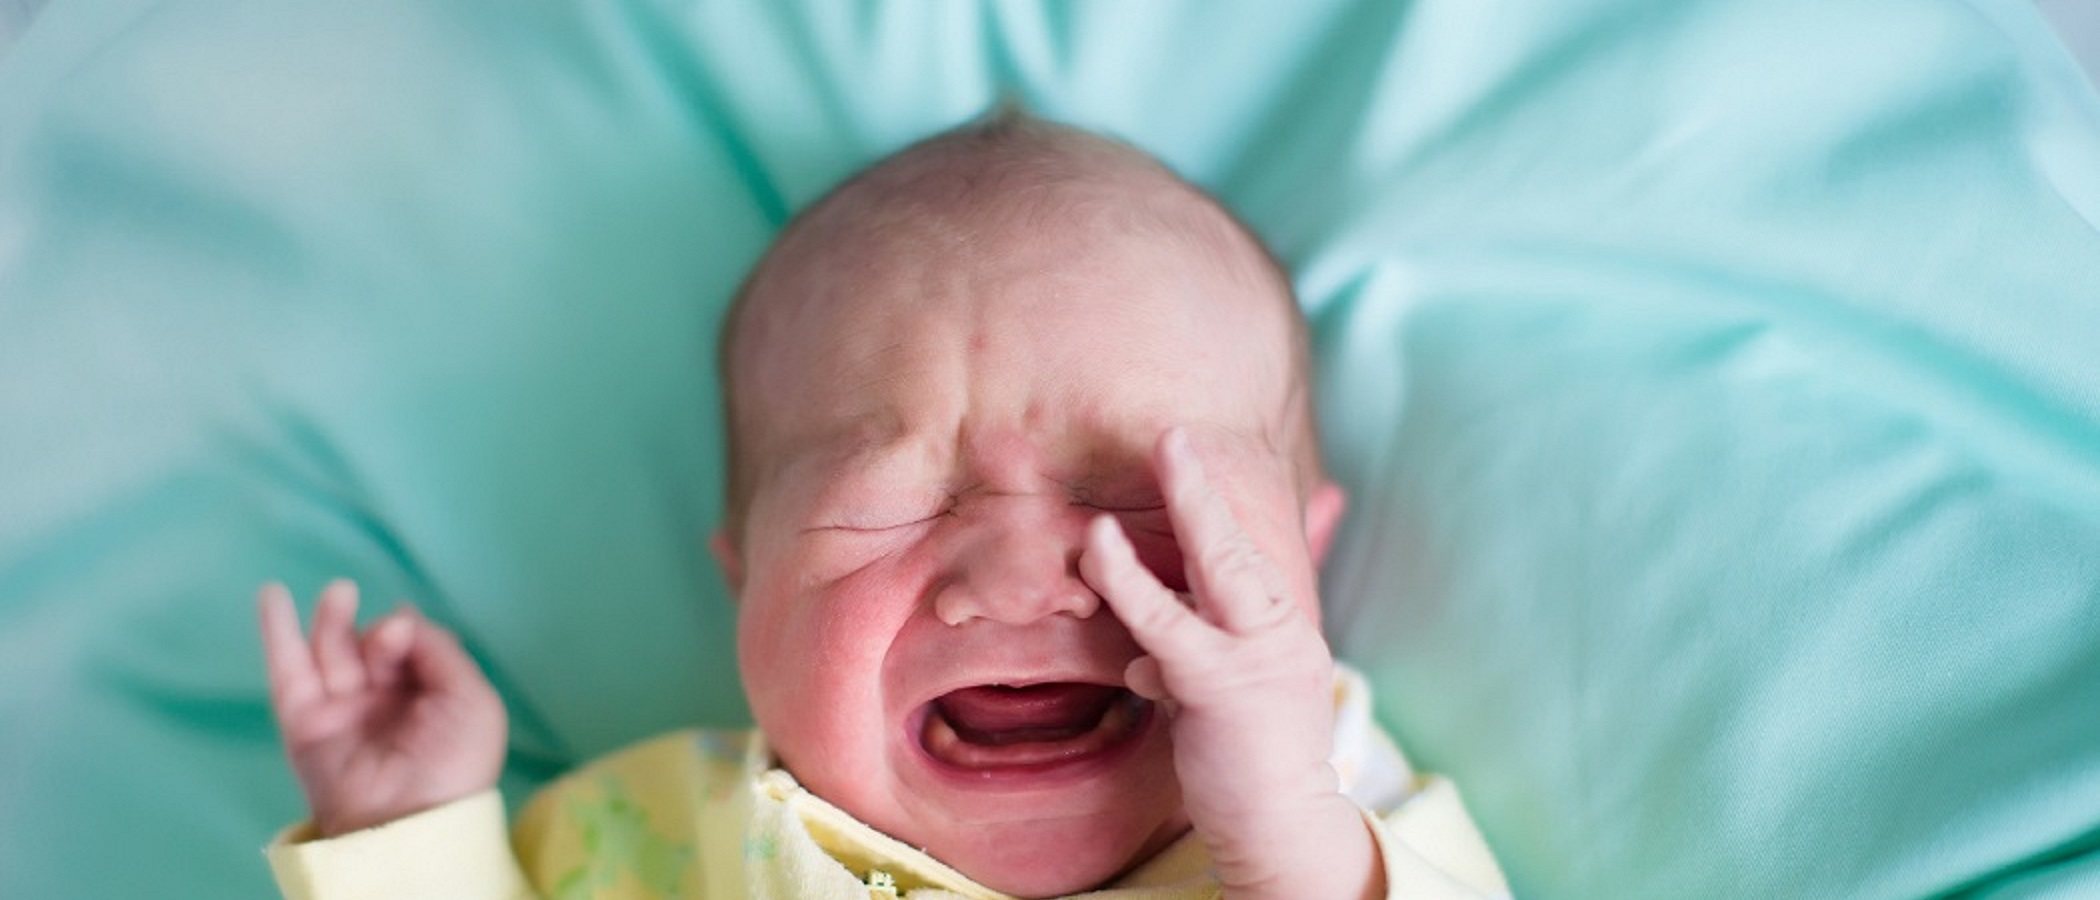 Las enfermedades respiratorias más frecuentes en los recién nacidos